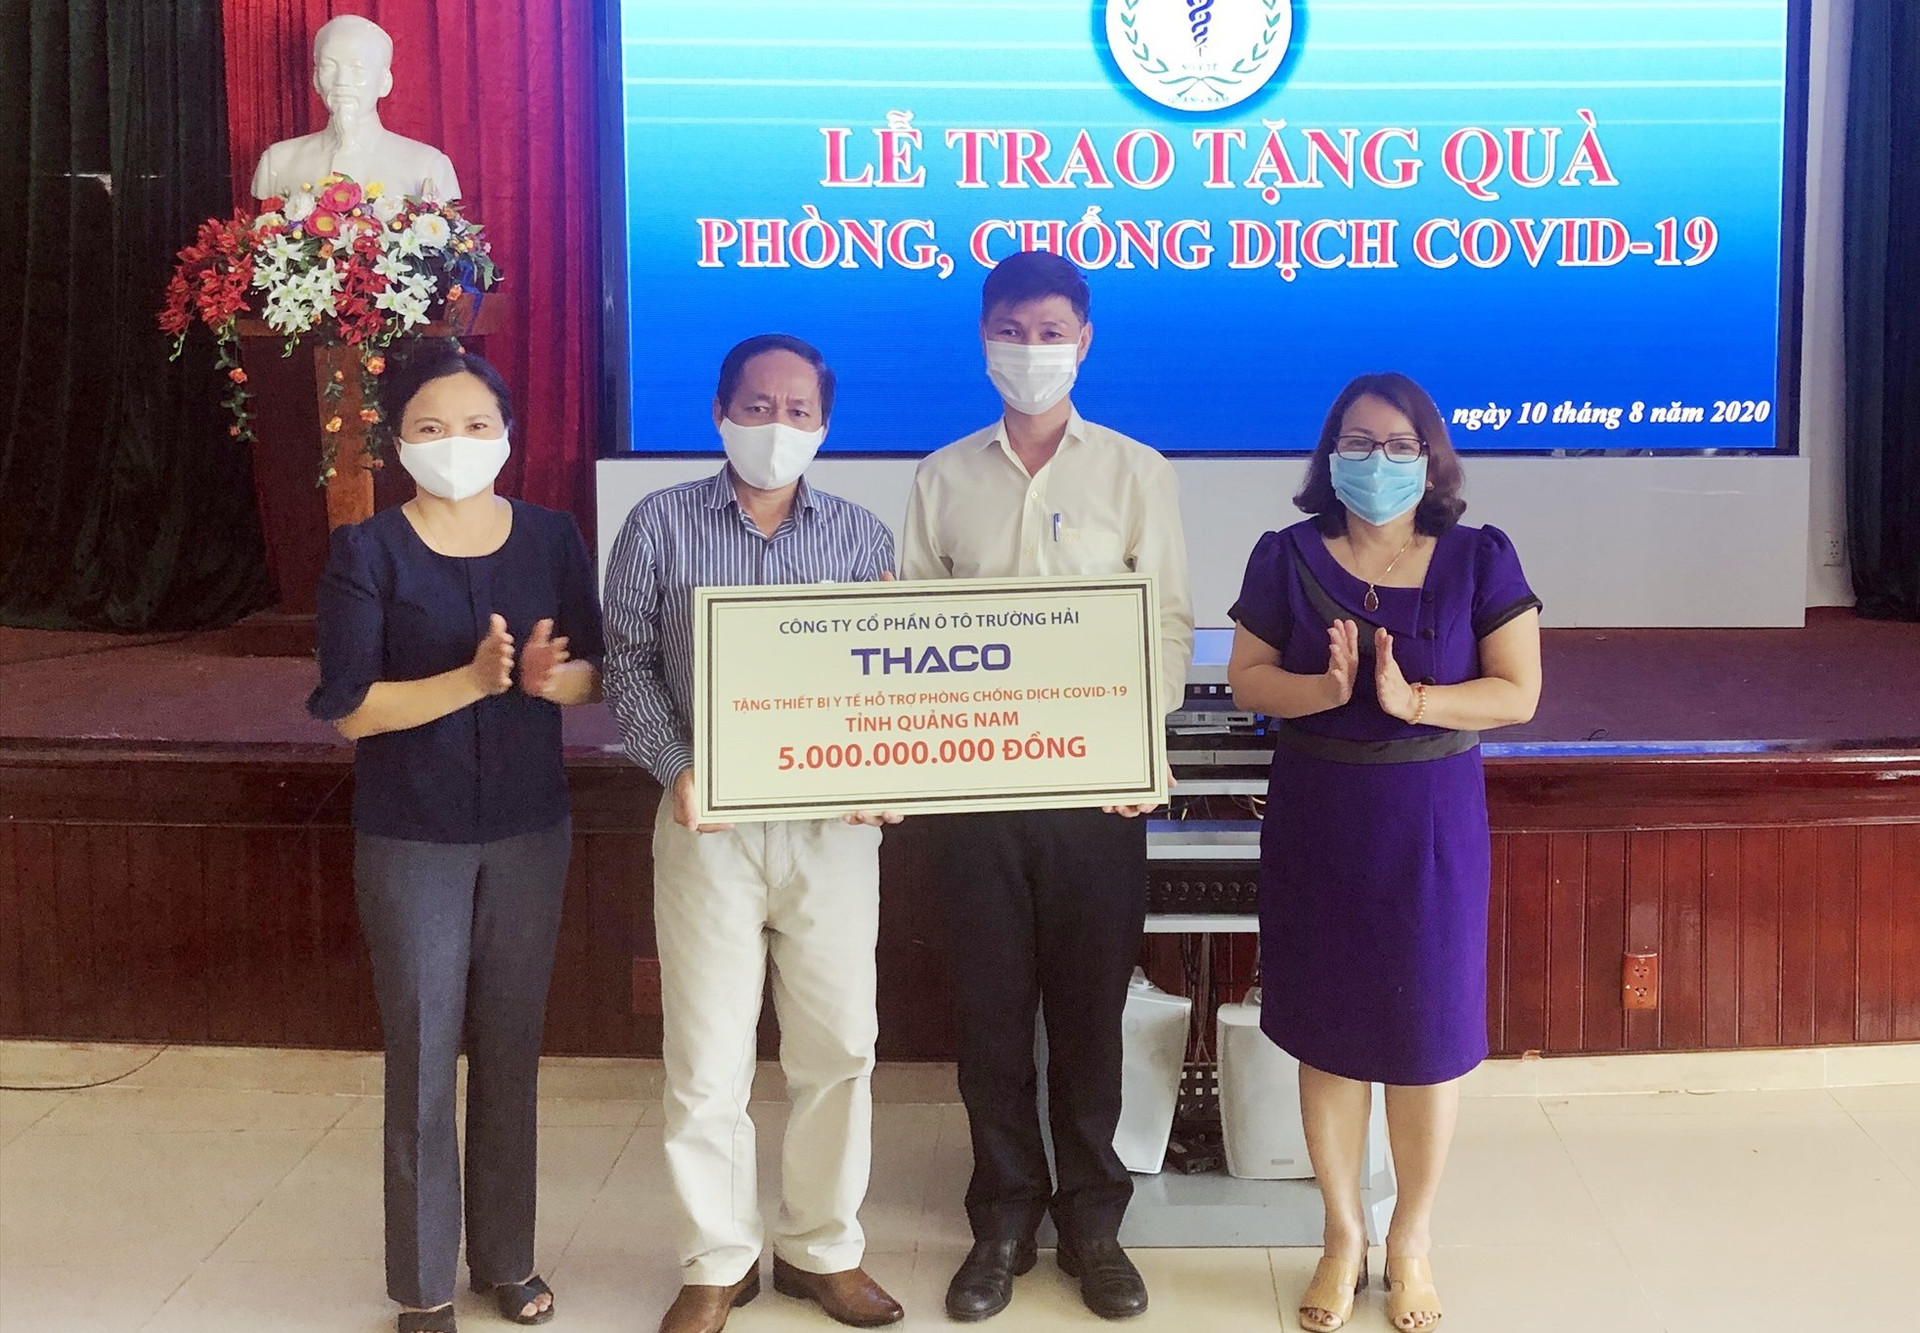 Đại diện THACO trao 5 tỷ đồng góp phần vào công tác phòng chống dịch Covid-19 của Quảng Nam.